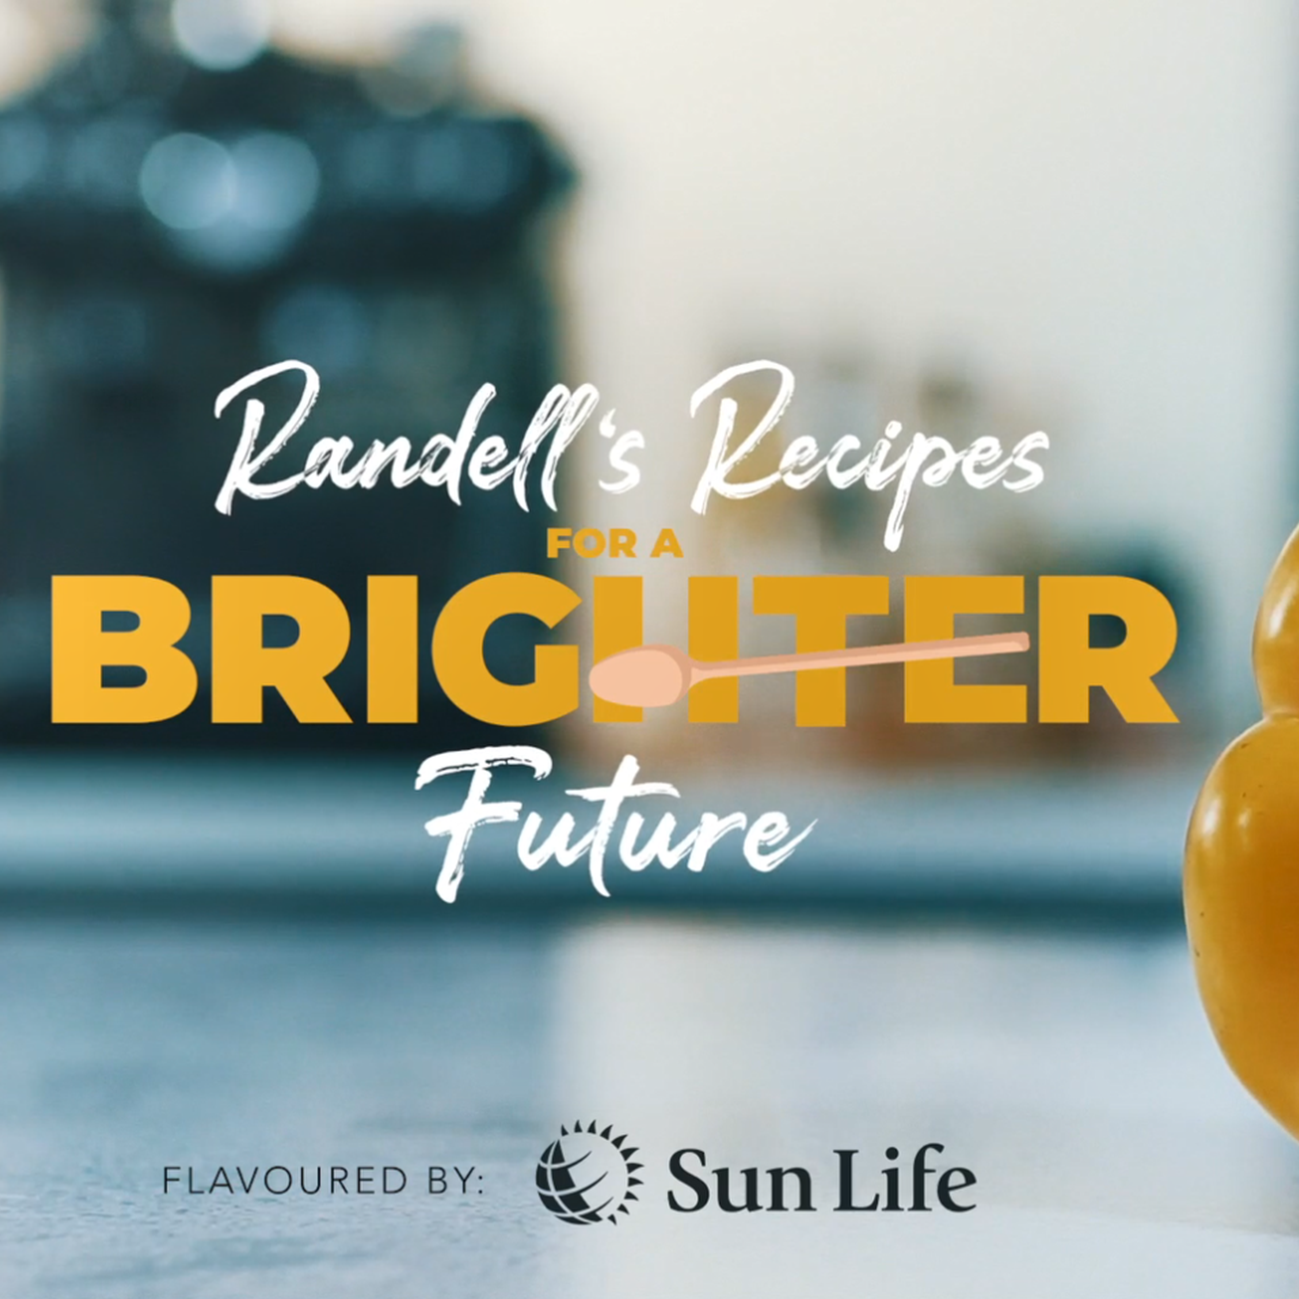 Randell’s Recipes for a Brighter Future